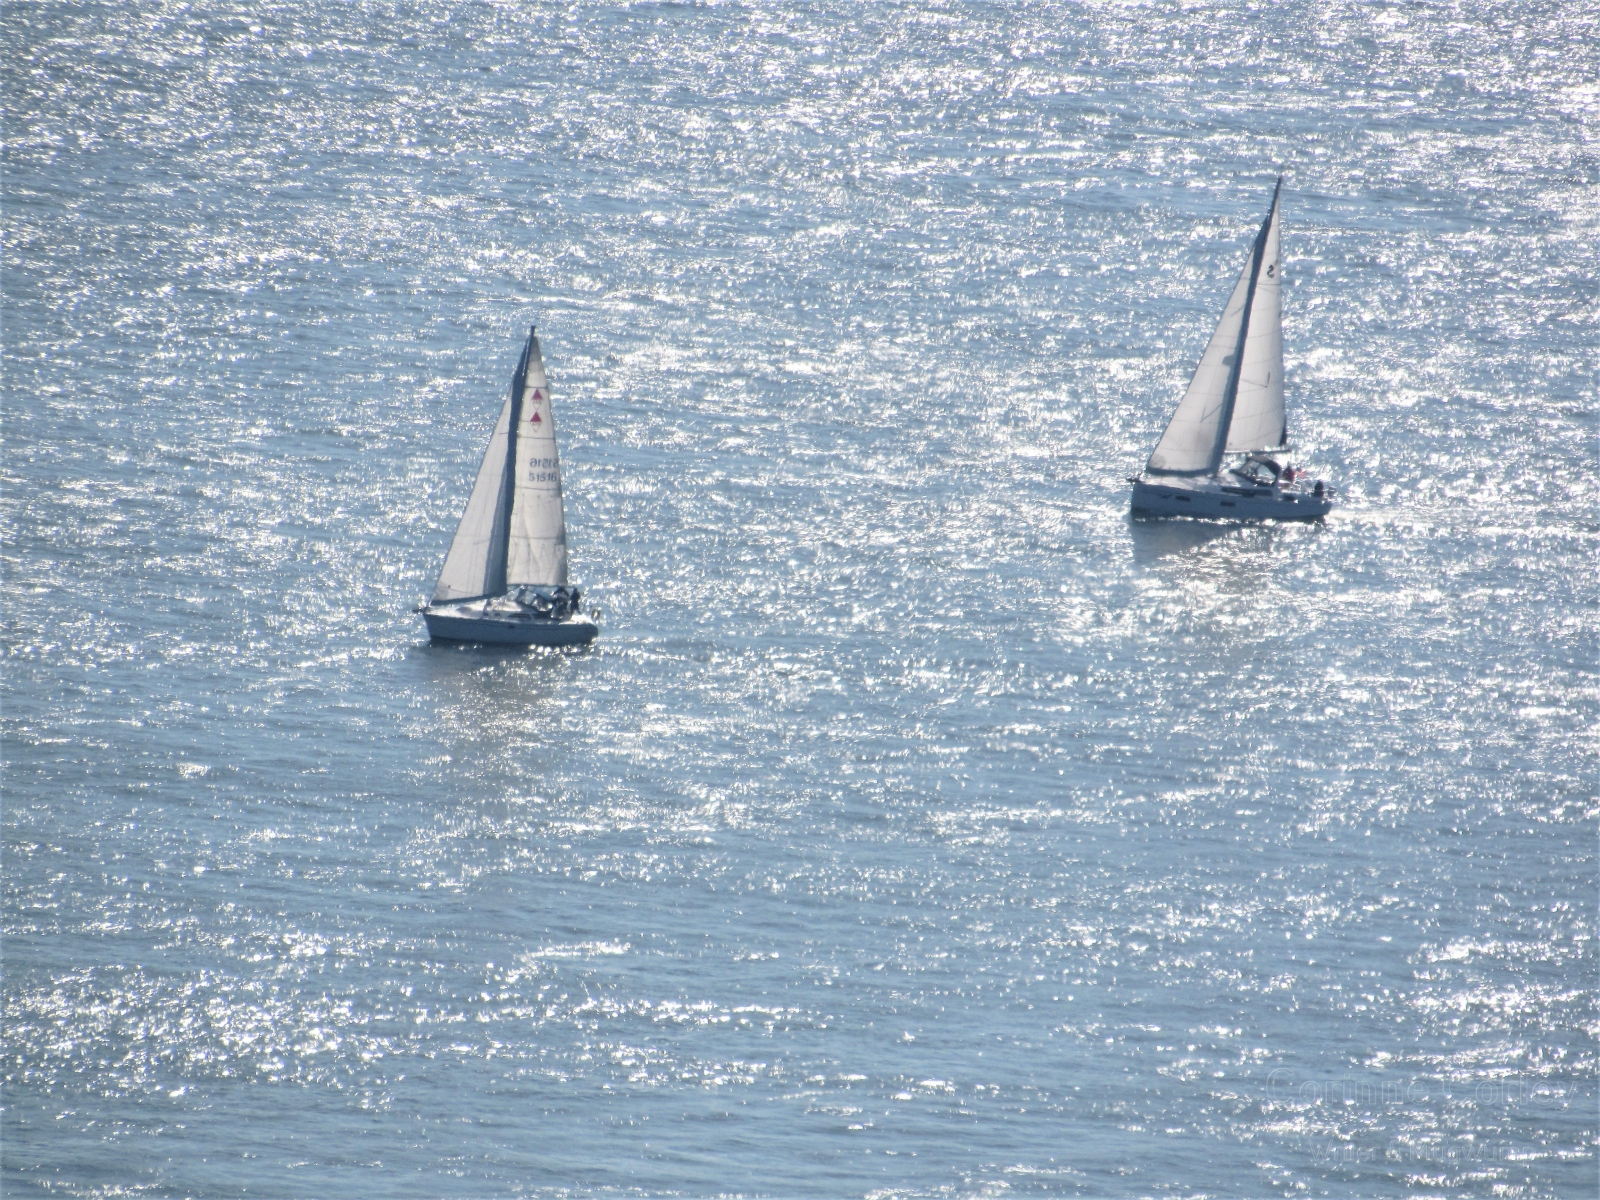 Two at sea